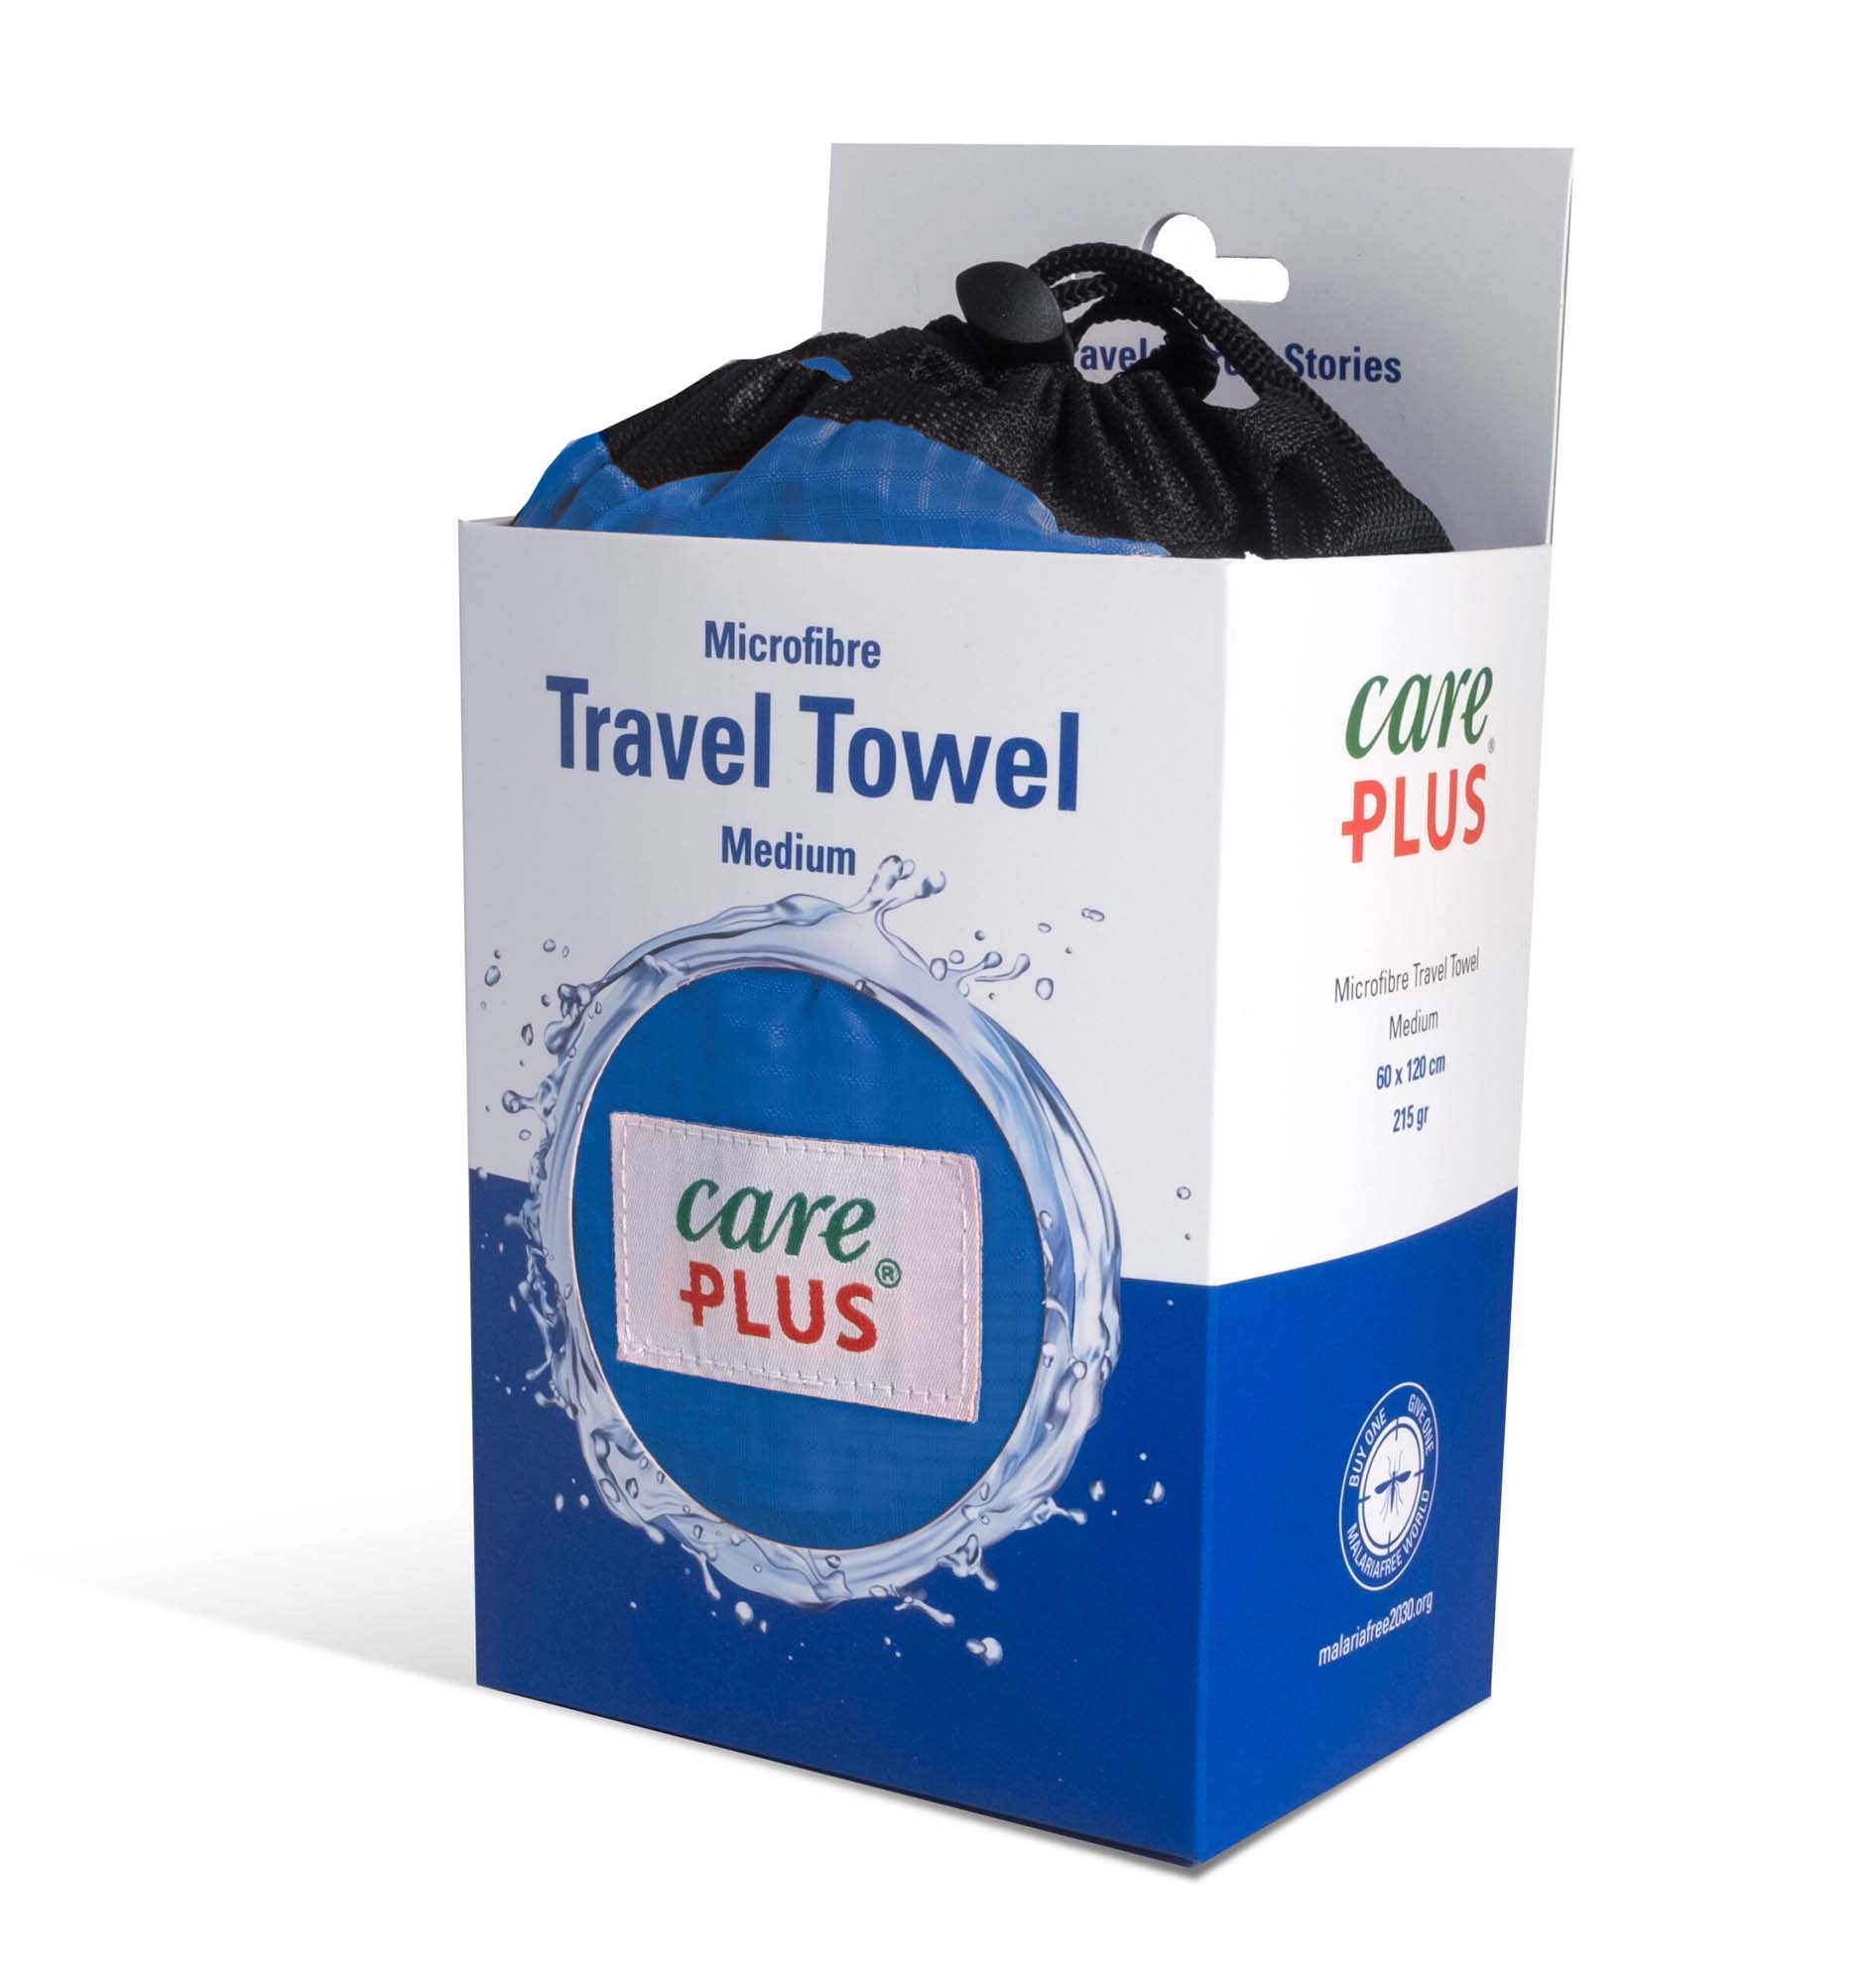 CARE PLUS Travel Towel